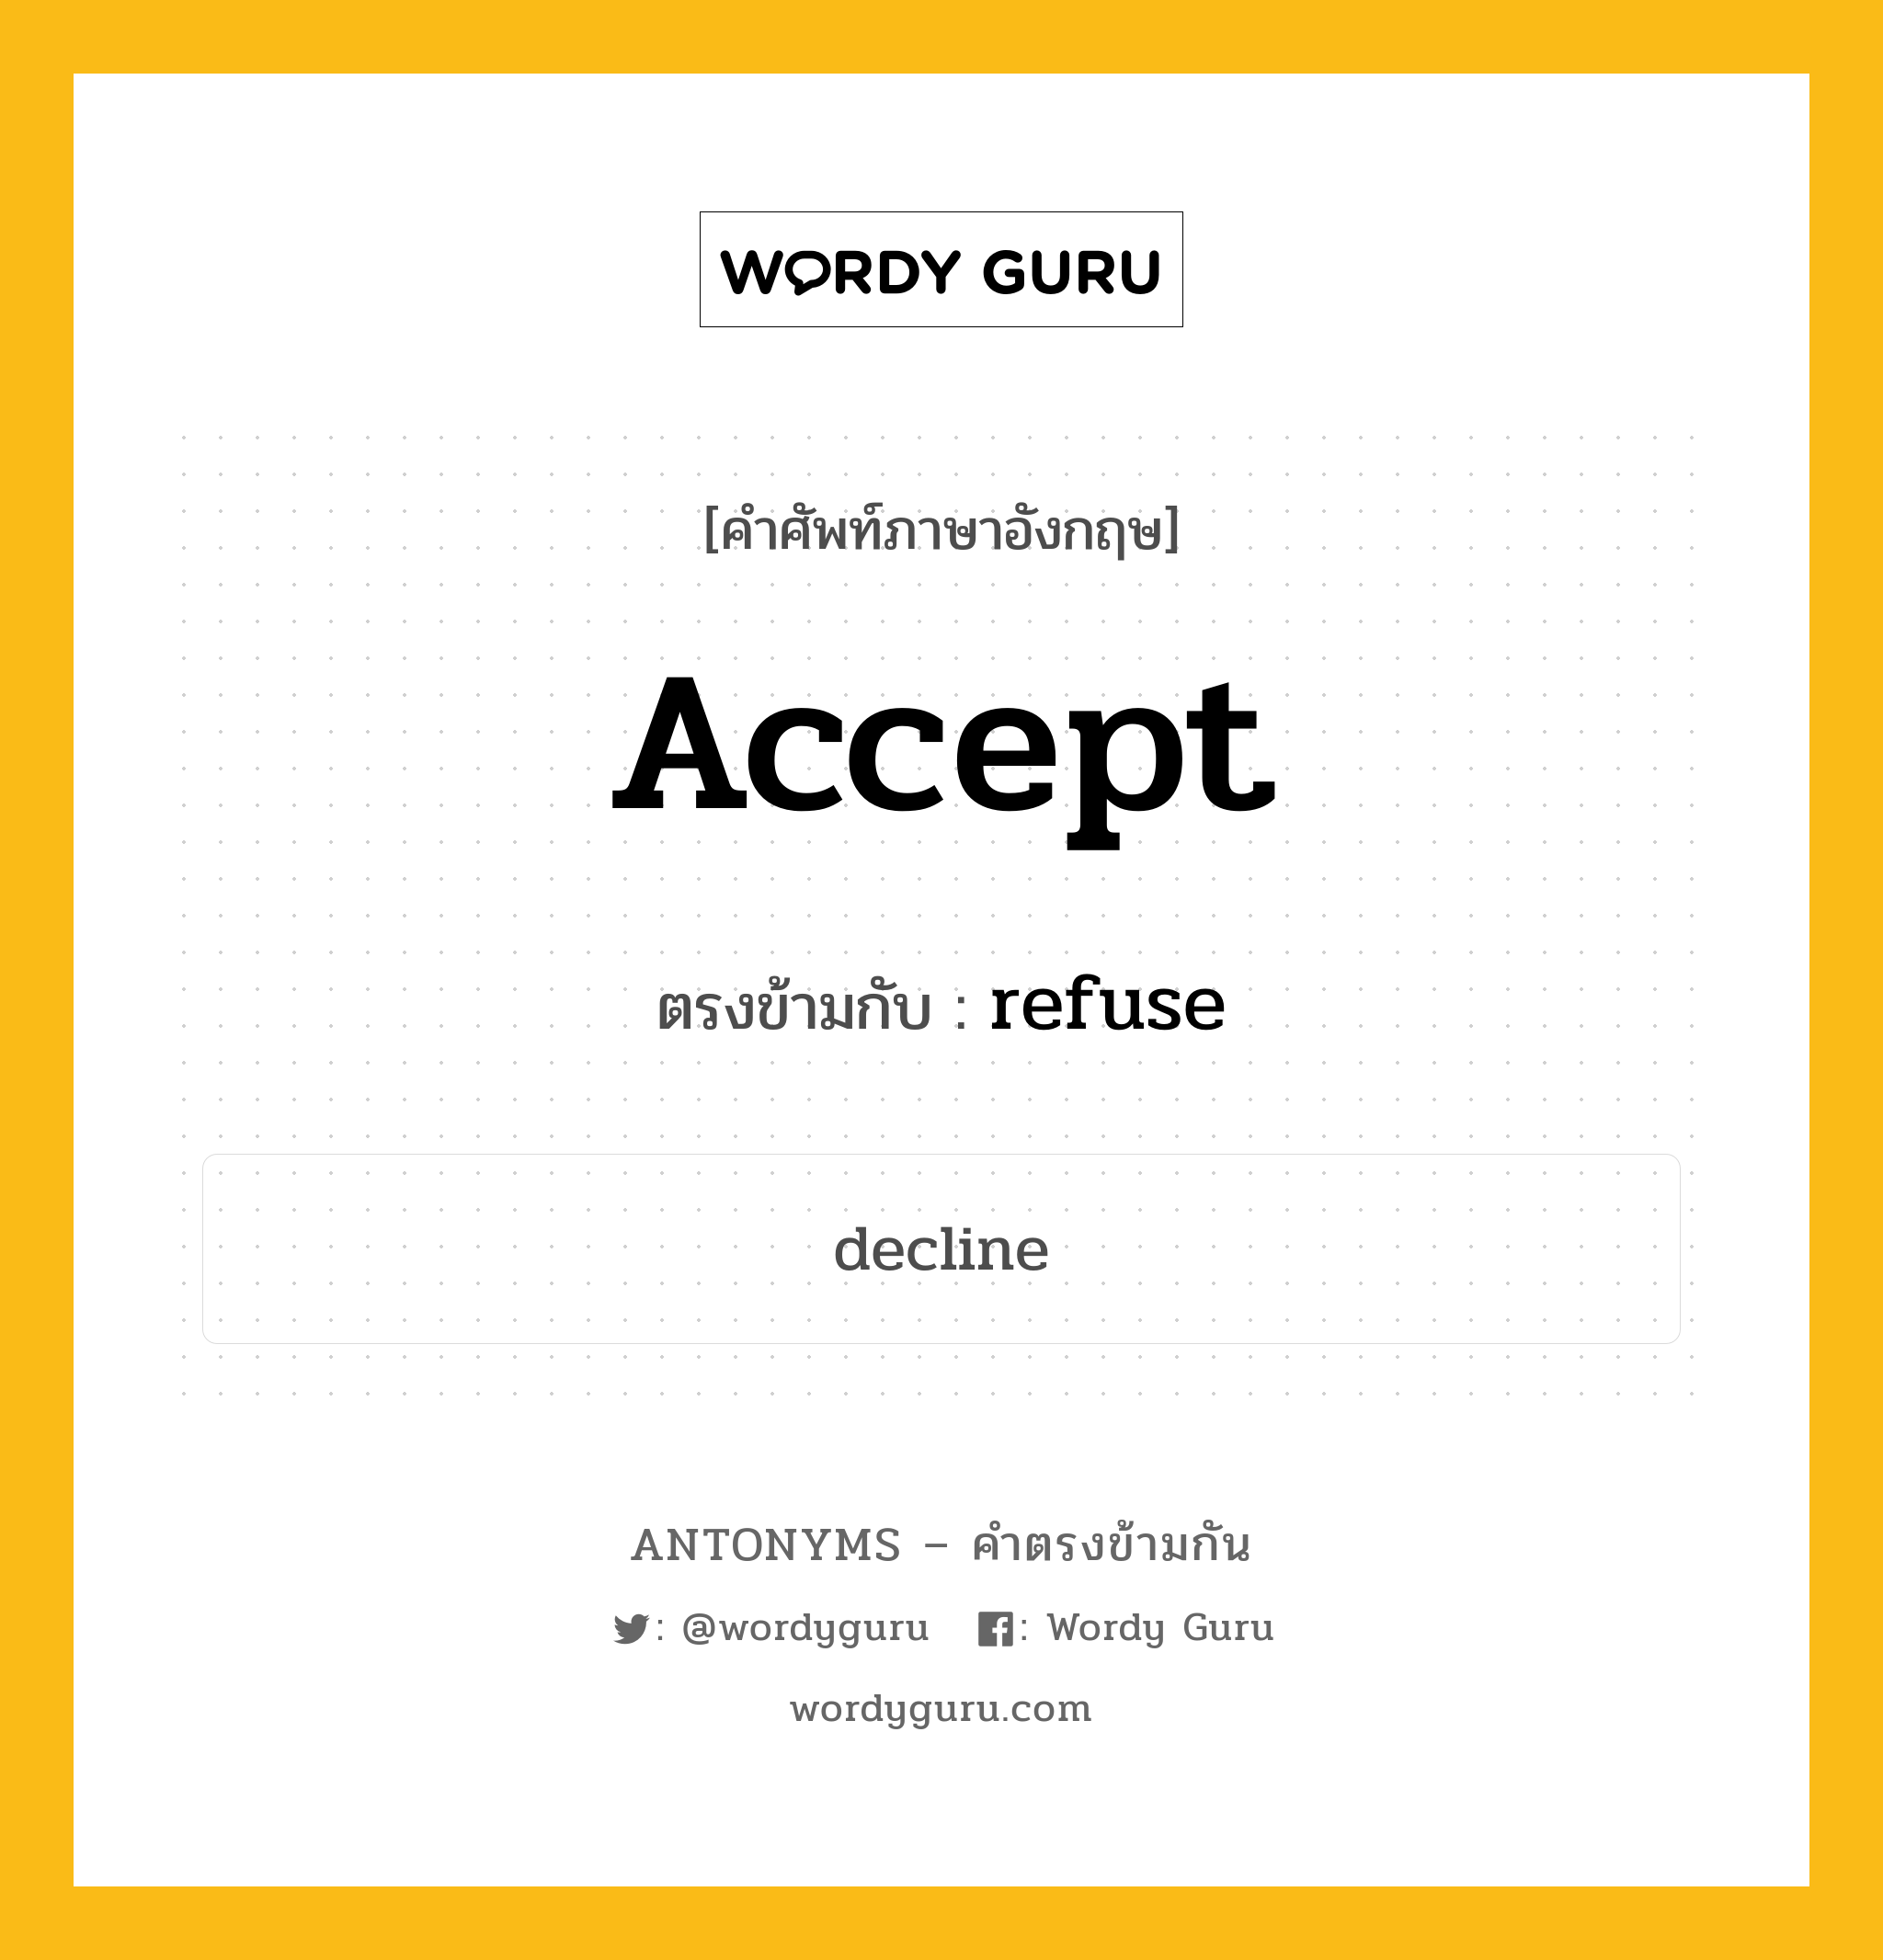 accept เป็นคำตรงข้ามกับคำไหนบ้าง?, คำศัพท์ภาษาอังกฤษ accept ตรงข้ามกับ refuse หมวด refuse